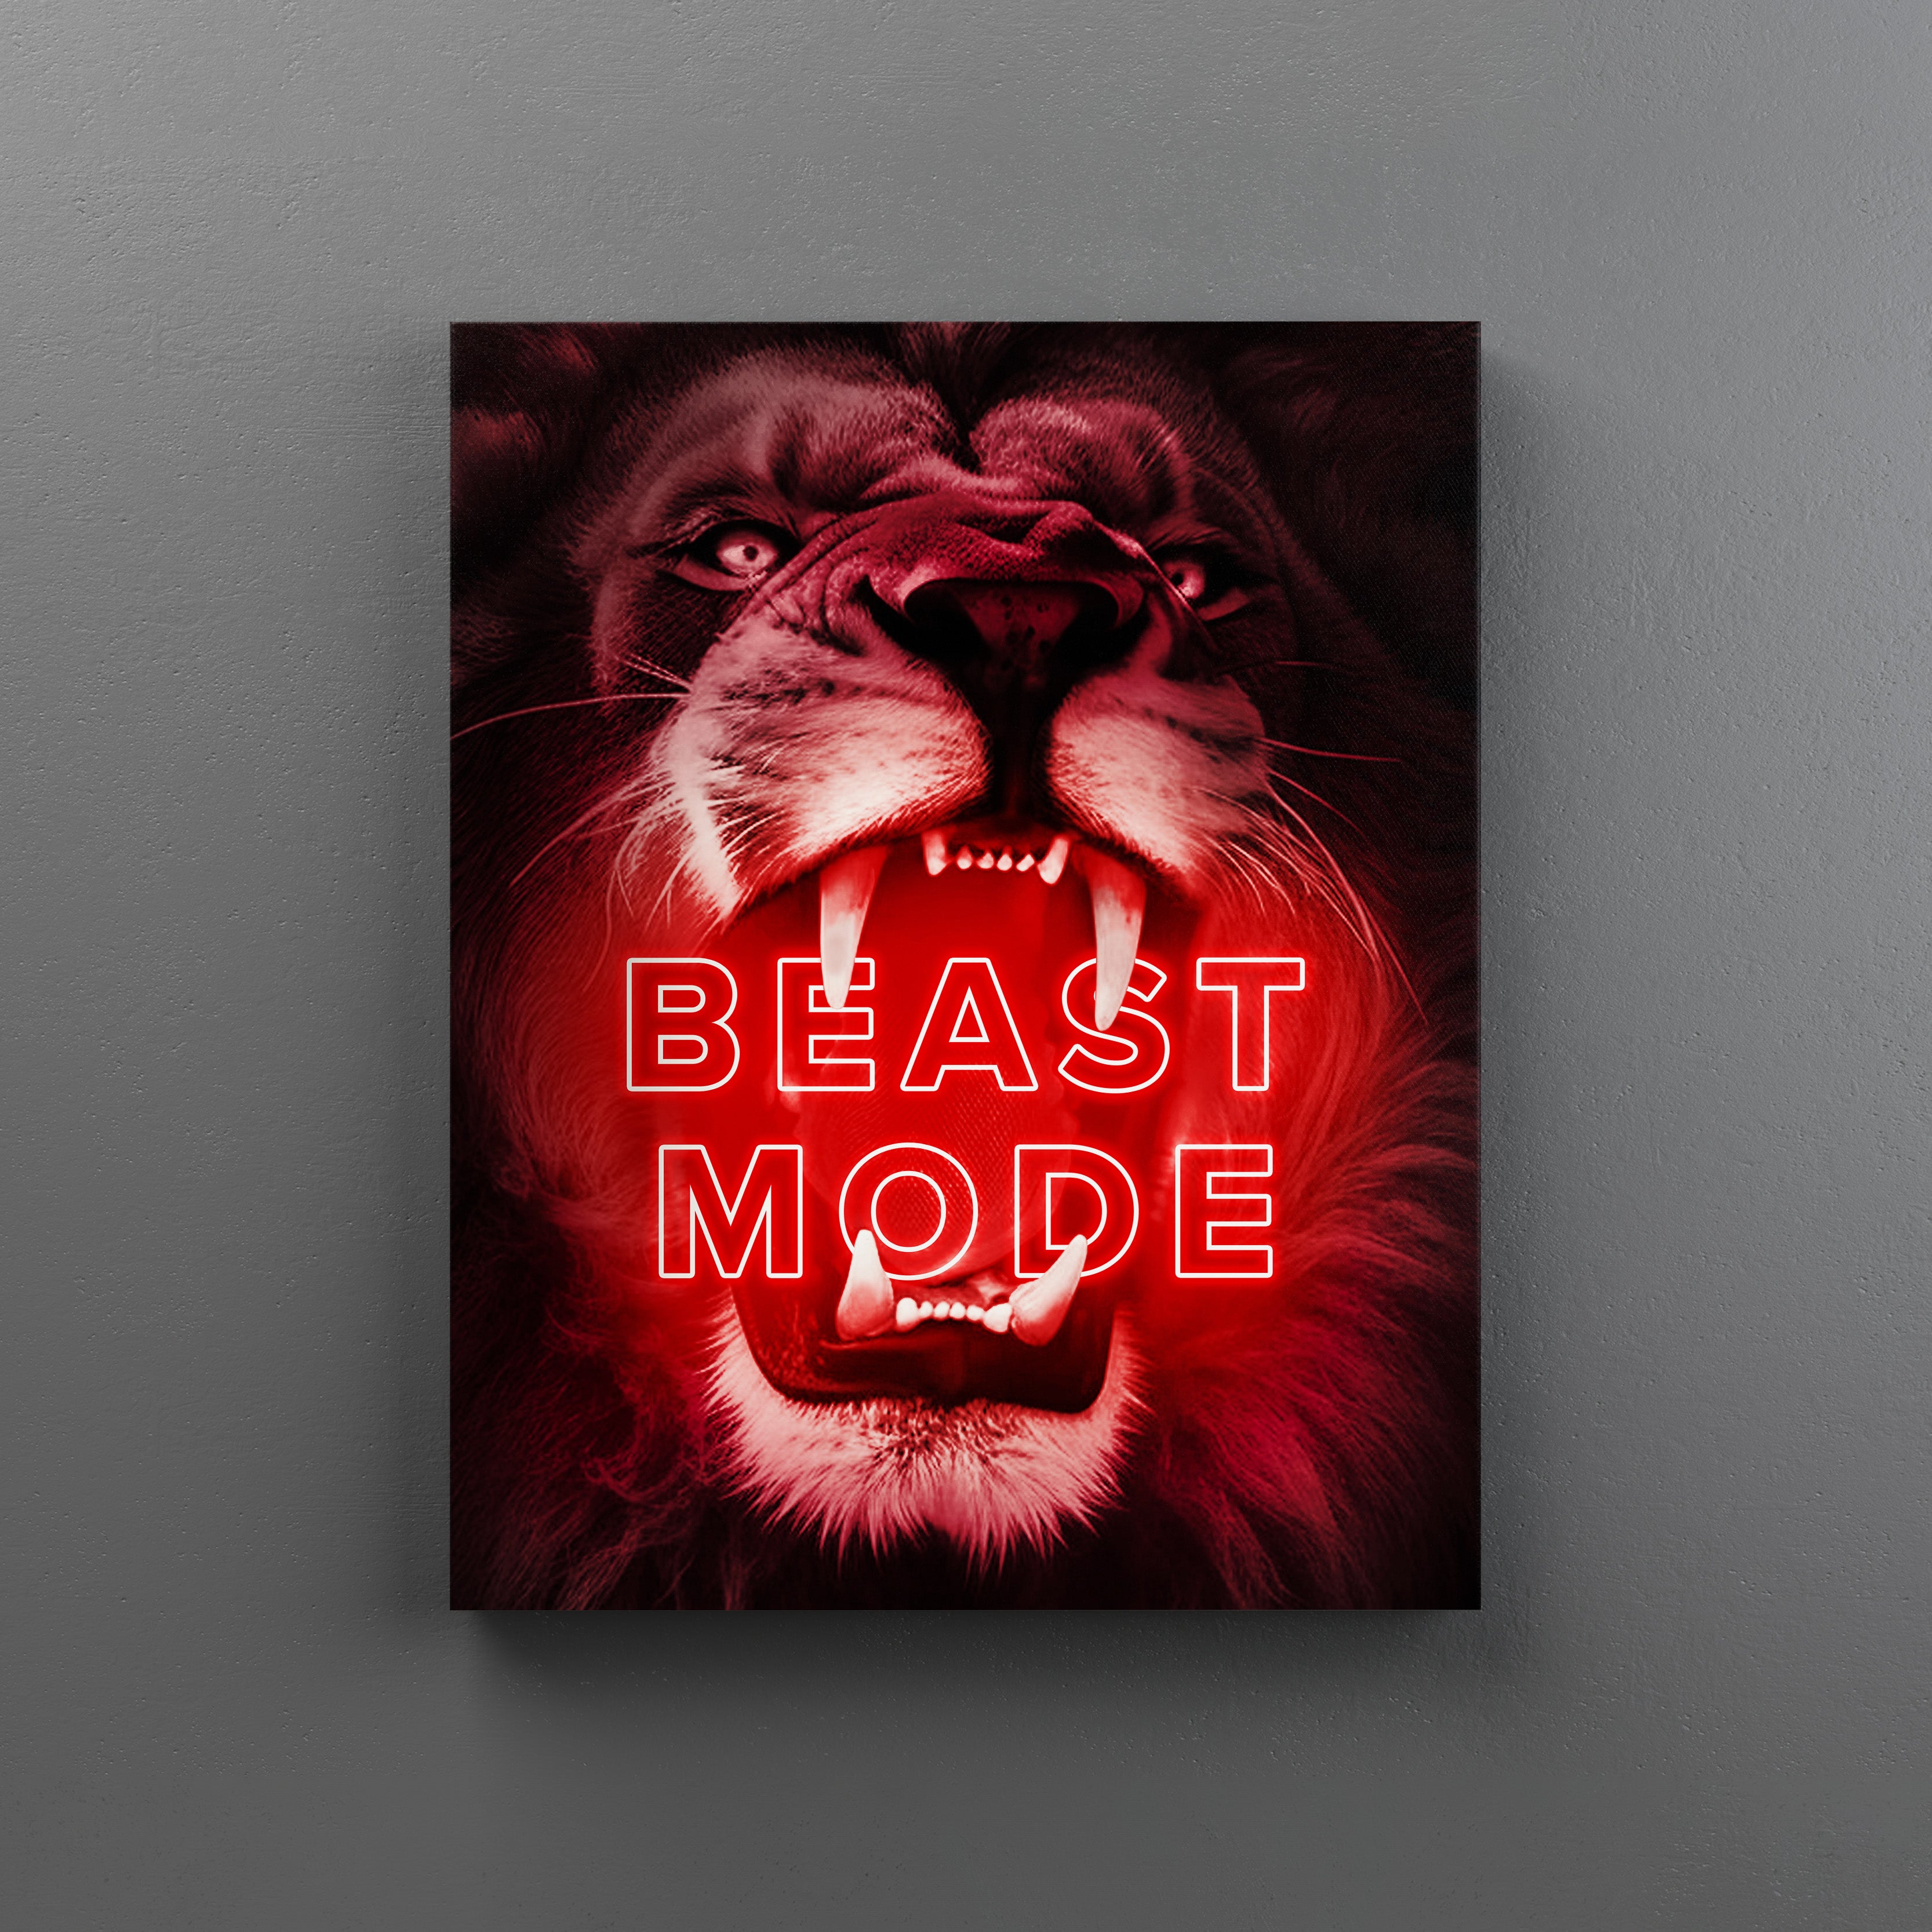 Beastmode by Beast